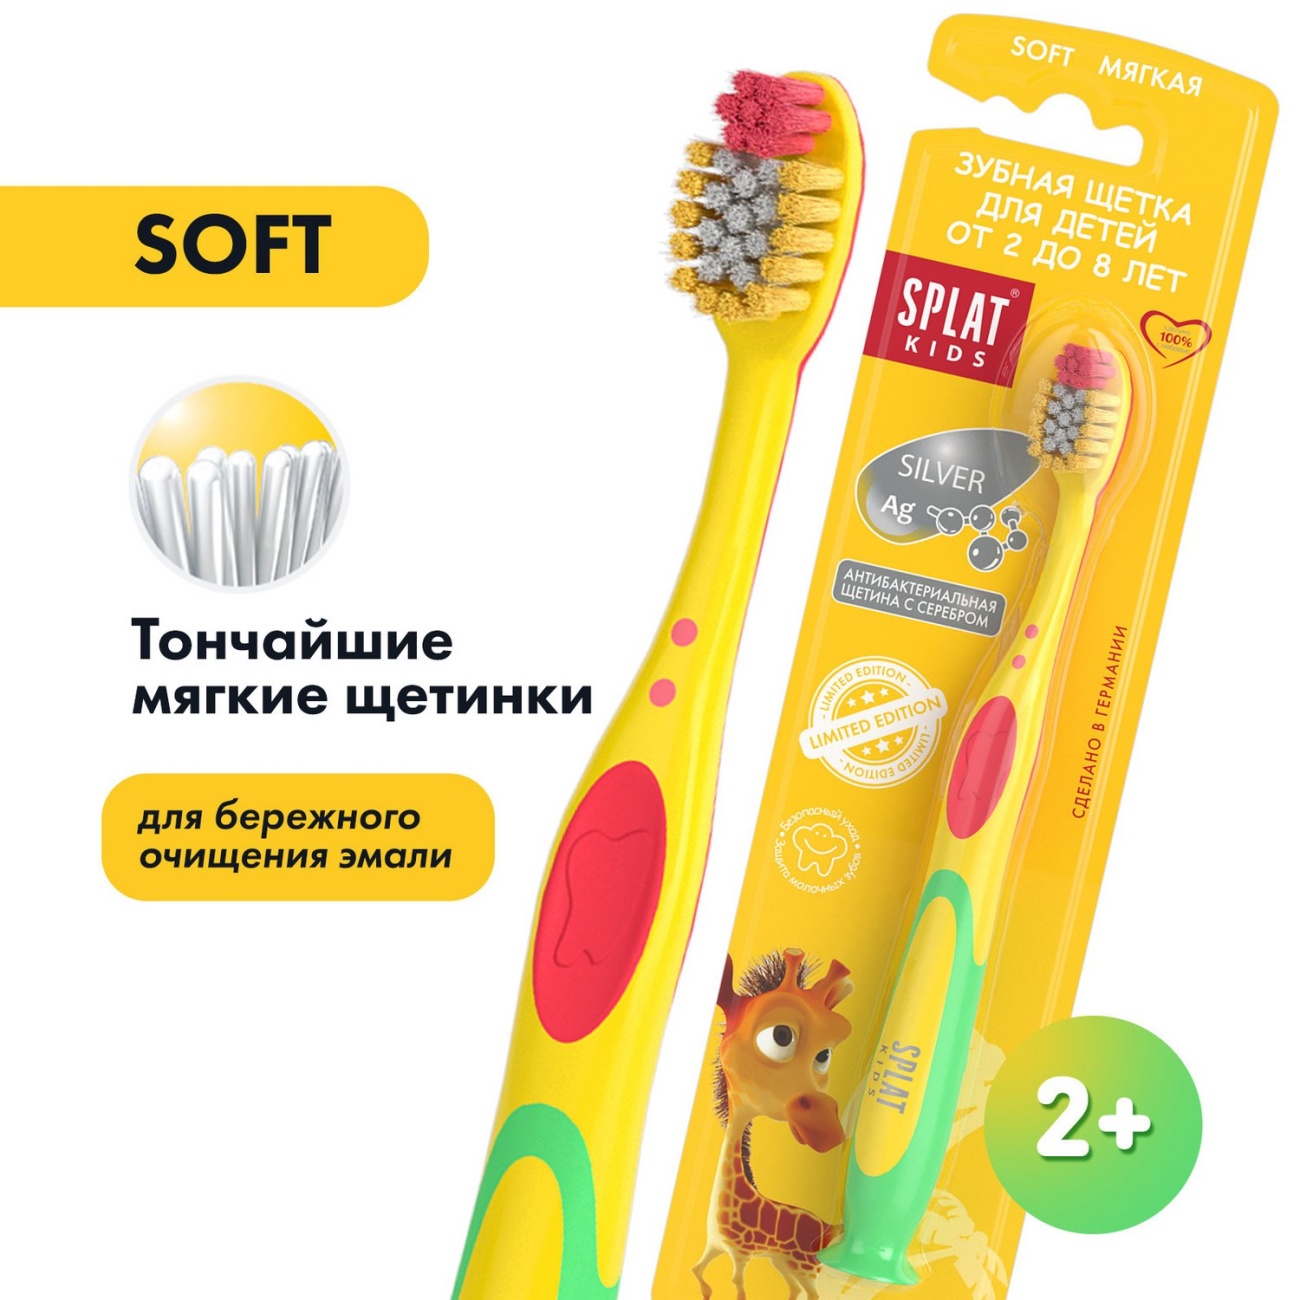 Зубная щетка SPLAT Kids 1шт для детей от 2 до 8 лет желтая 4052500102568/желтая